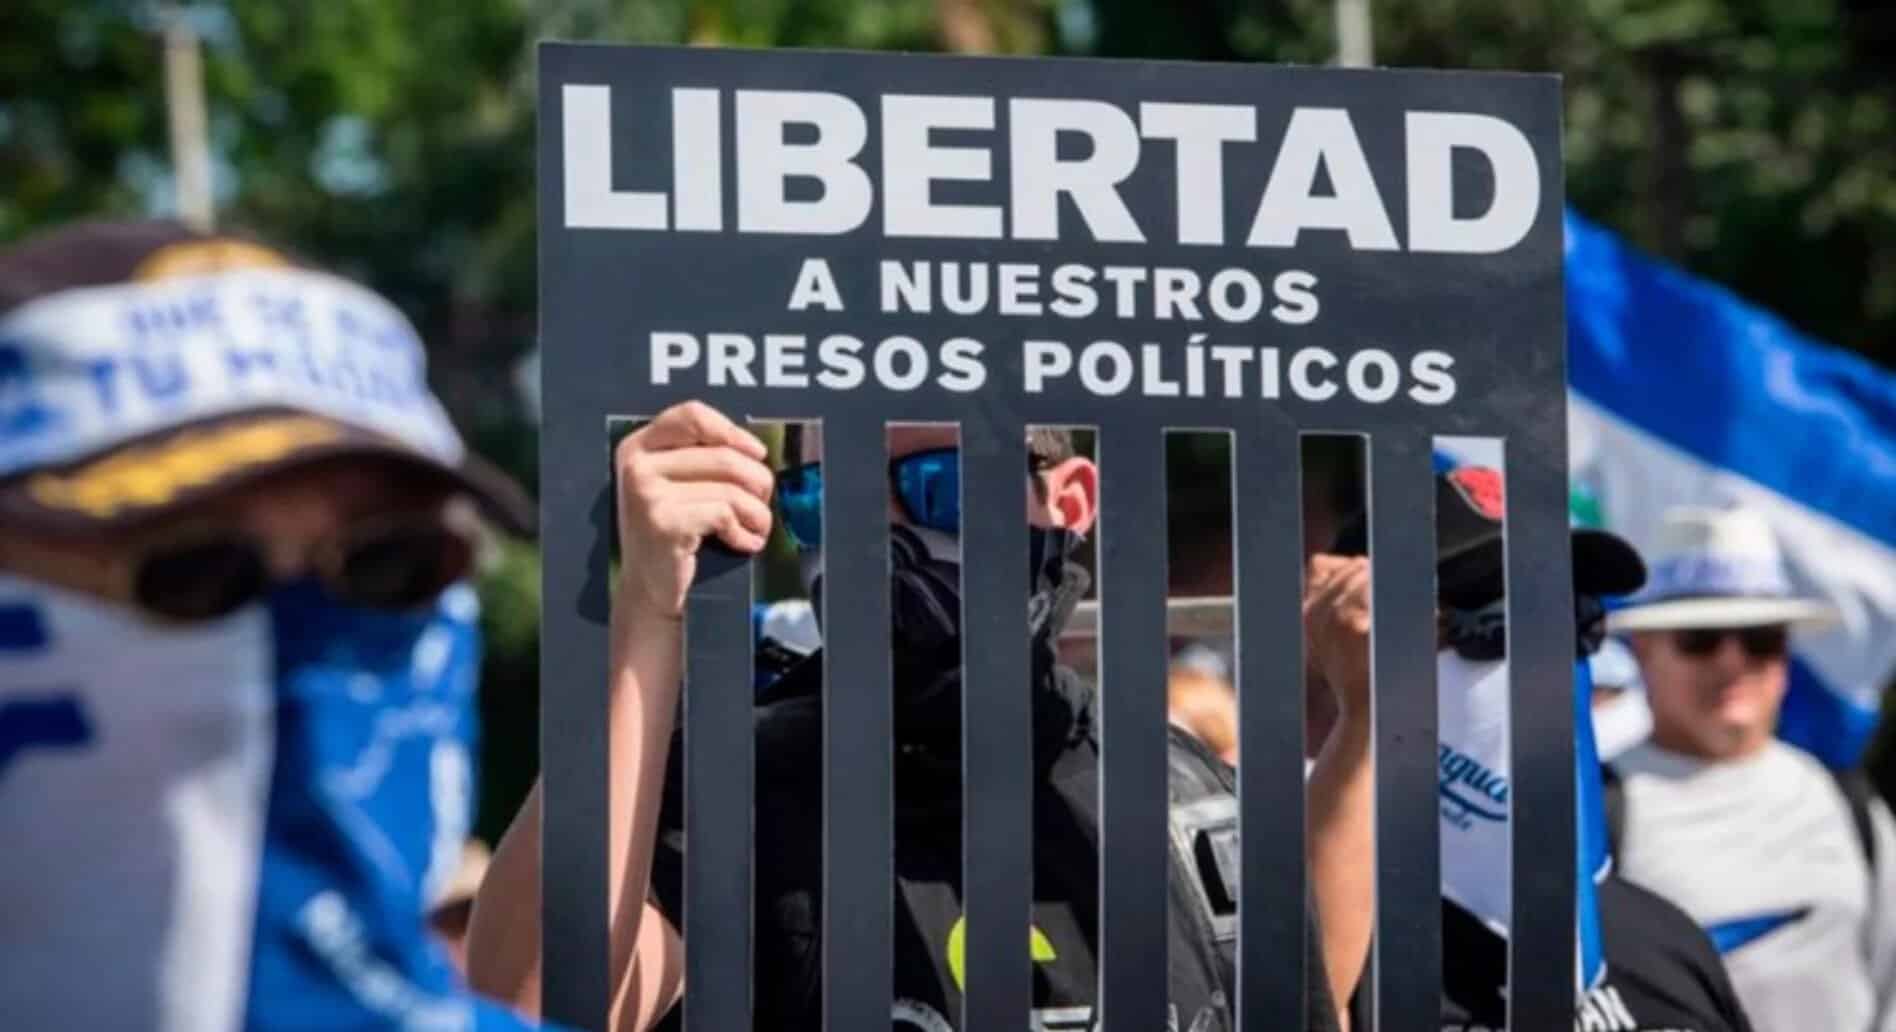 Presos políticos Nicaragua